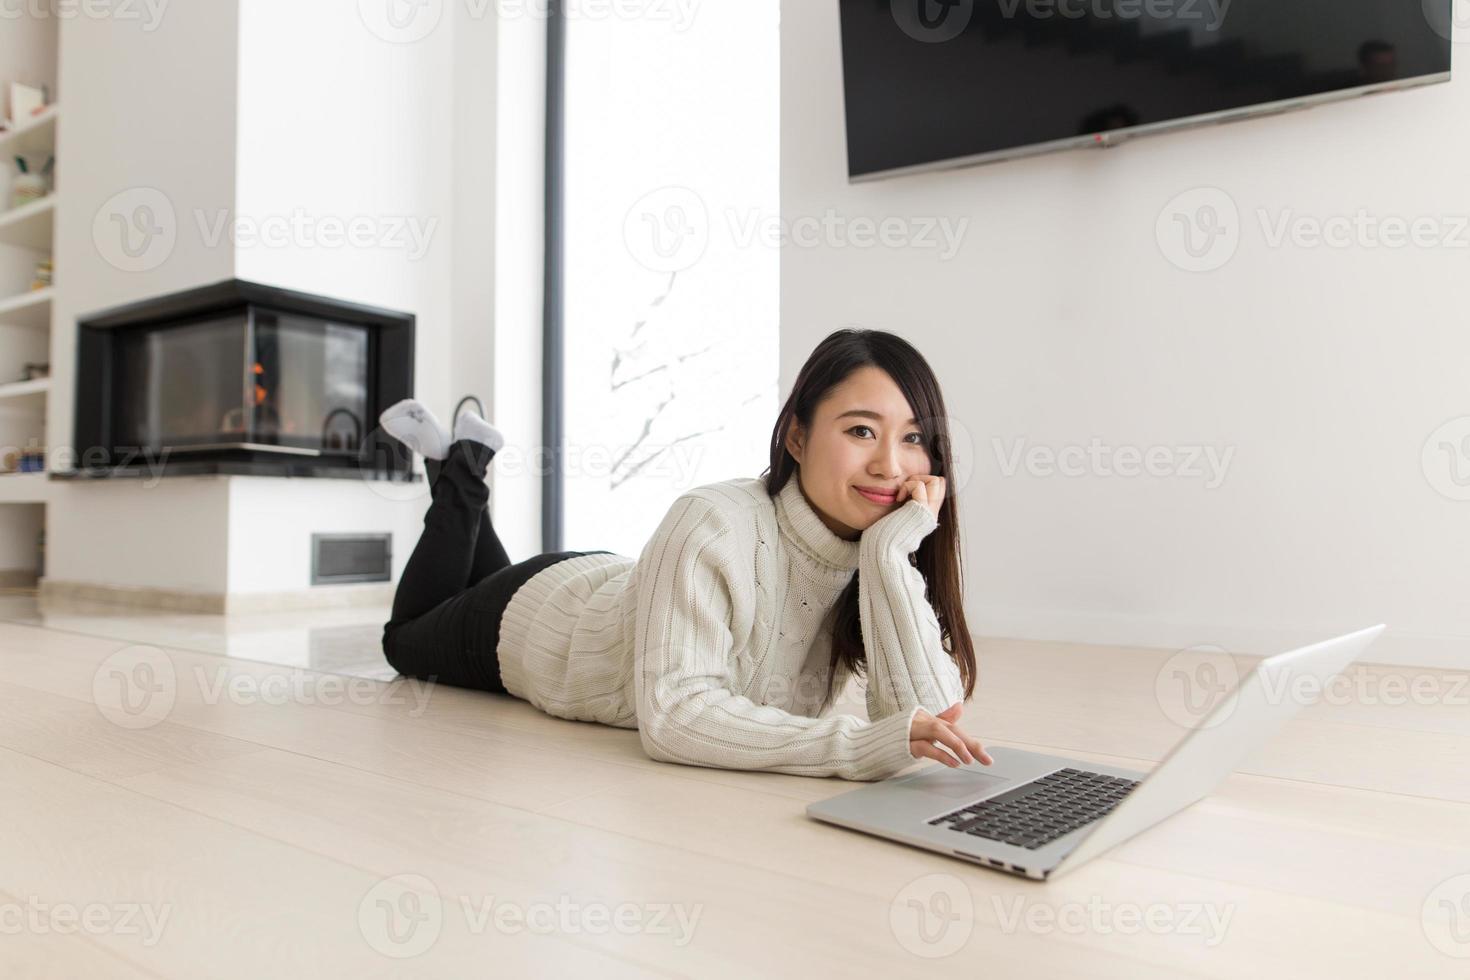 jeune femme asiatique utilisant un ordinateur portable sur le sol photo